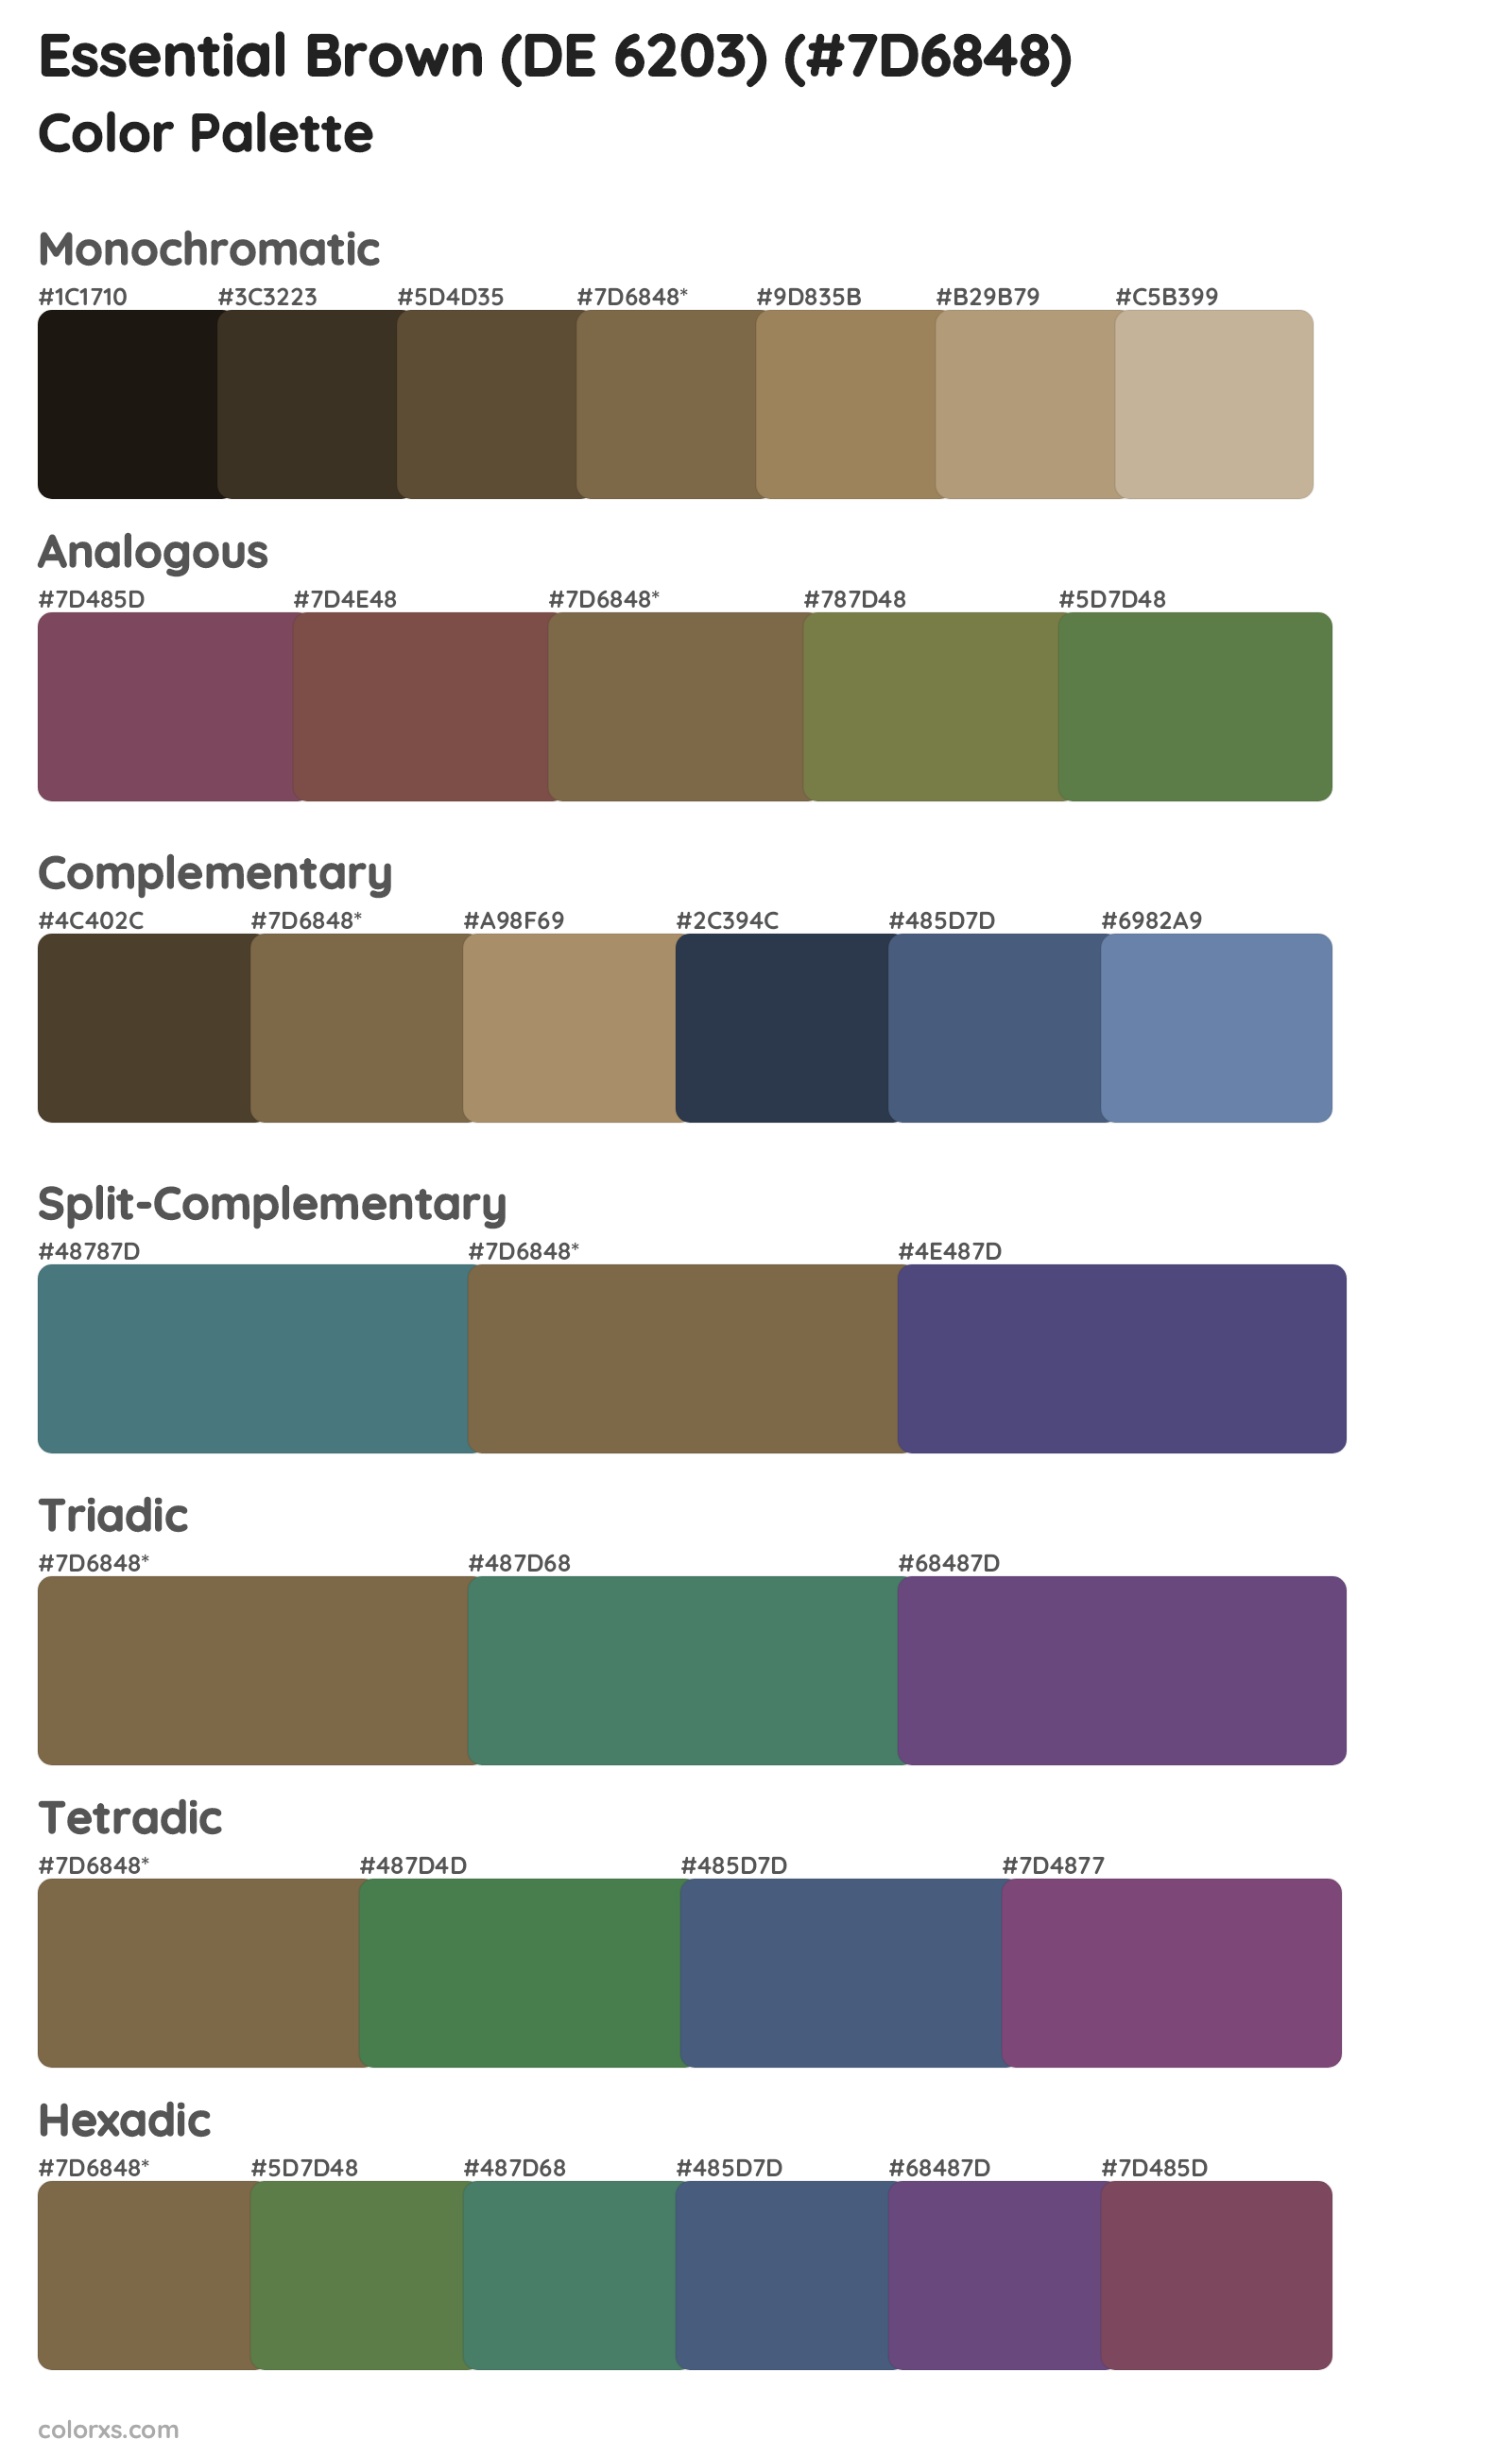 Essential Brown (DE 6203) Color Scheme Palettes